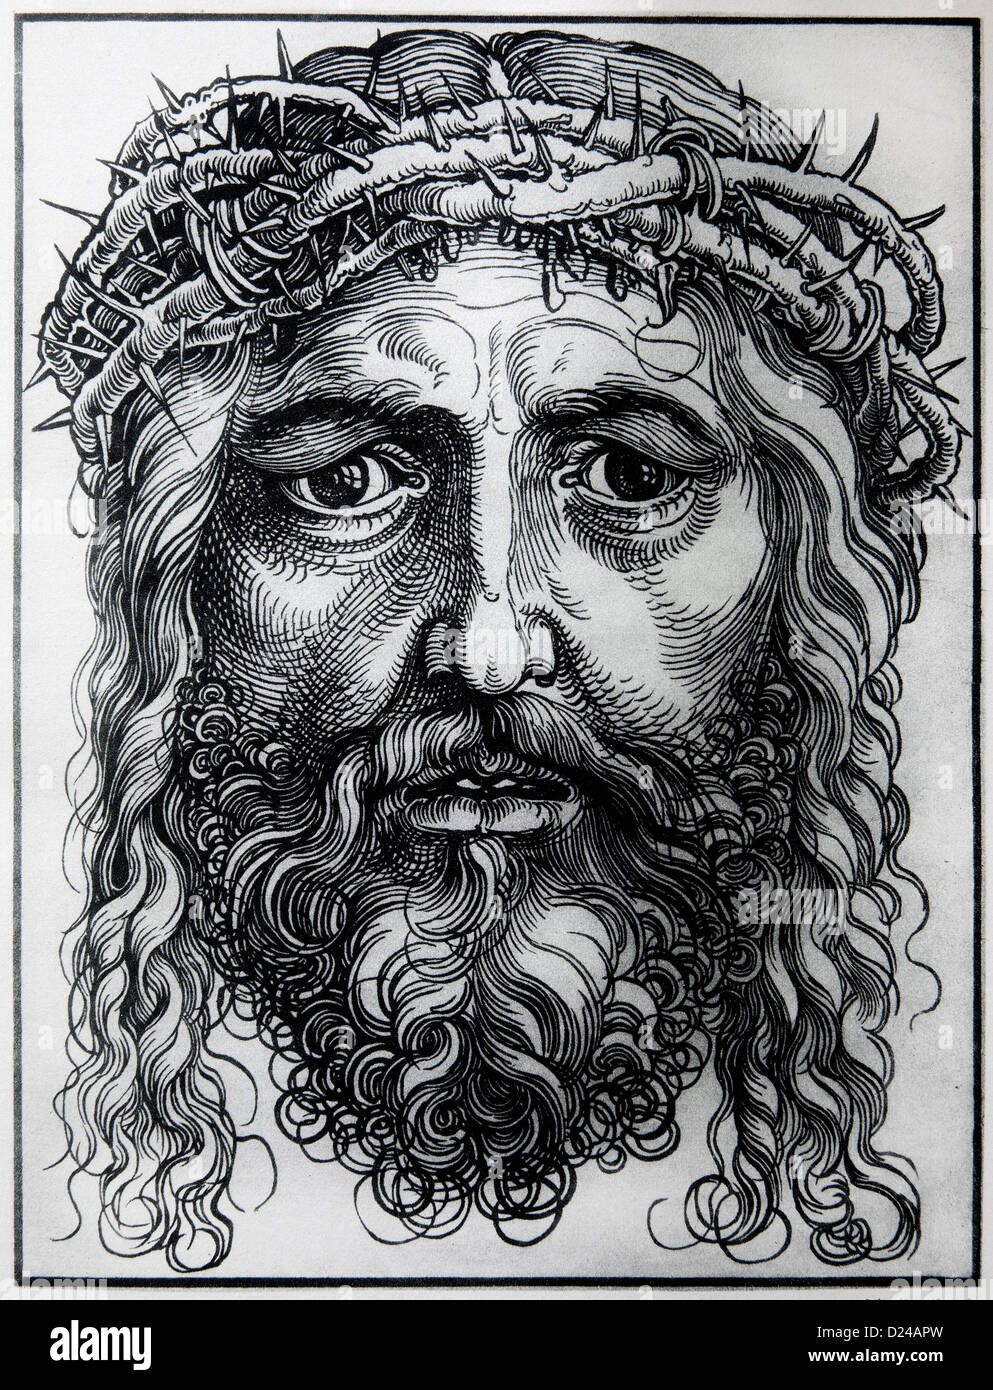 Alemania - 1928: la litografía de cabeza de Jesucristo por Alberto Durero. Foto de stock